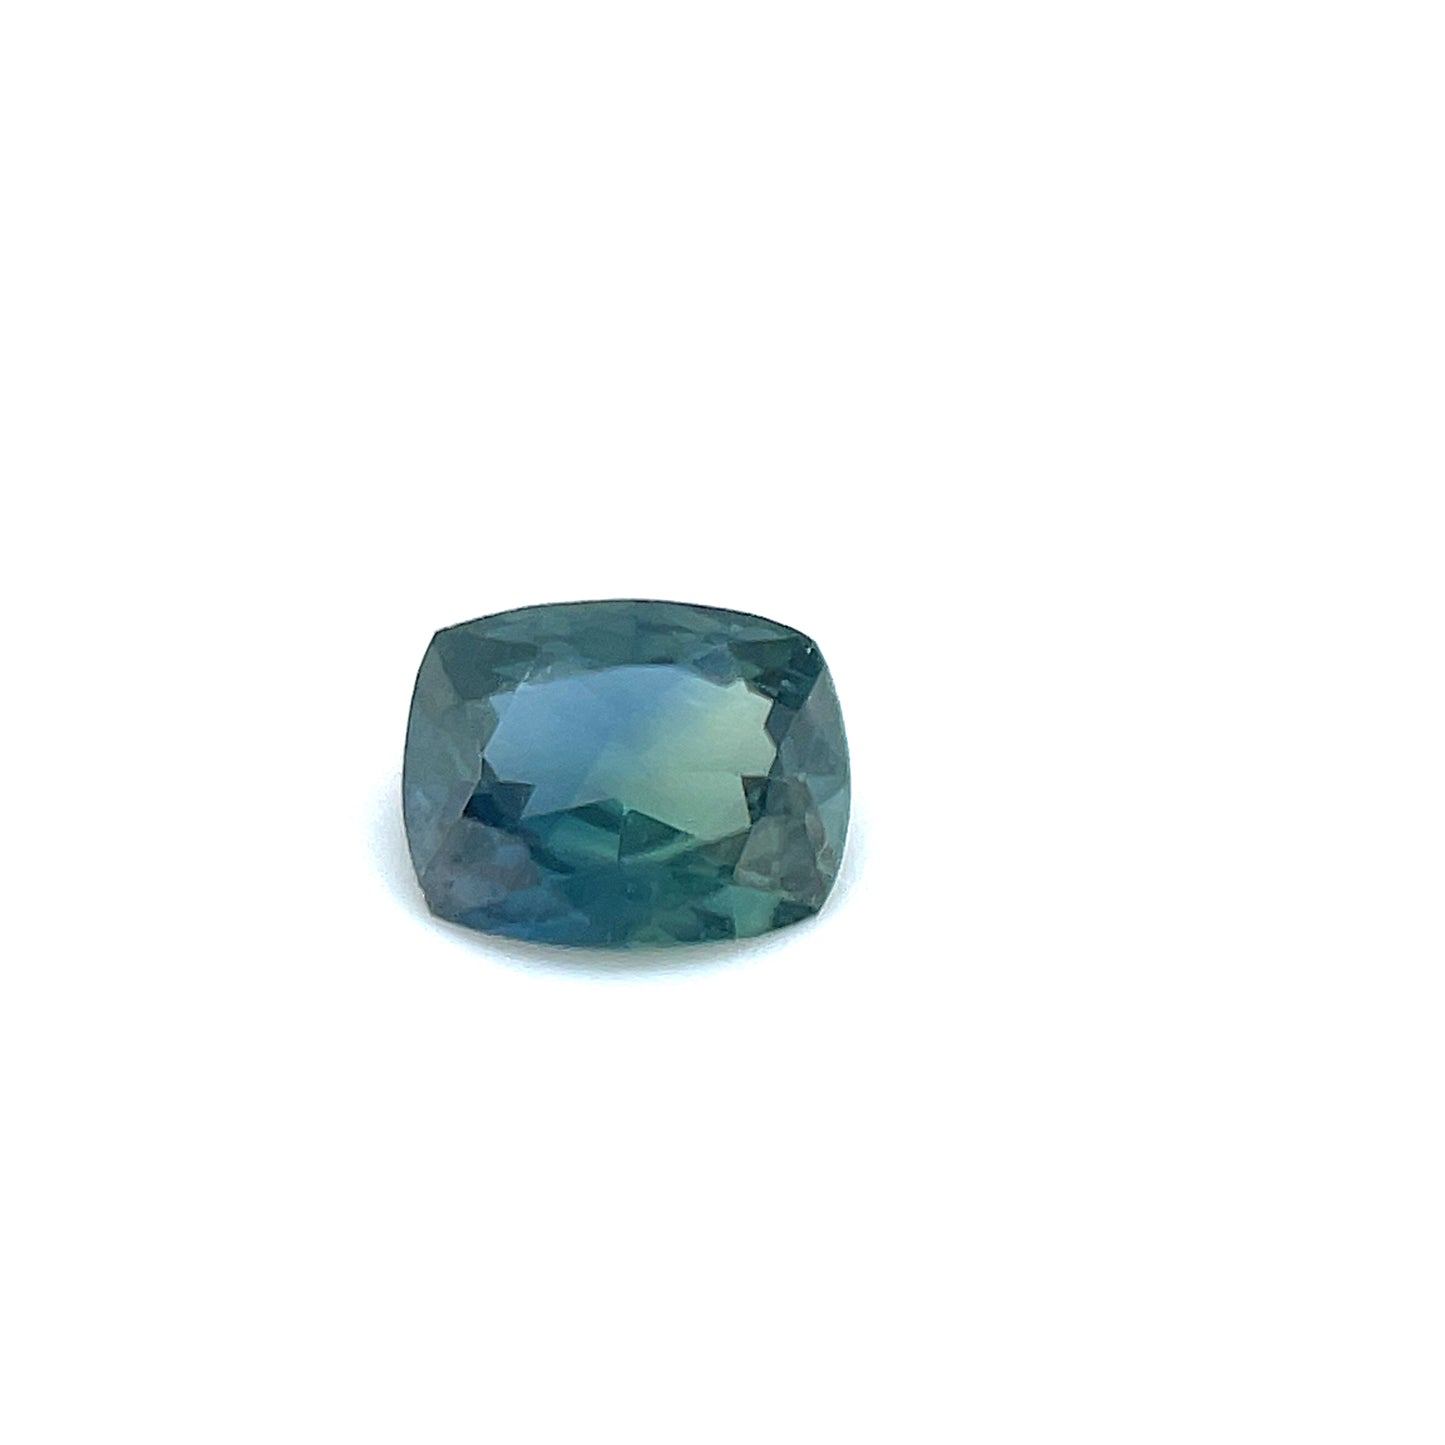 Saphir, blau grün, cushion, 0.59 ct., 4,5x5,7 mm